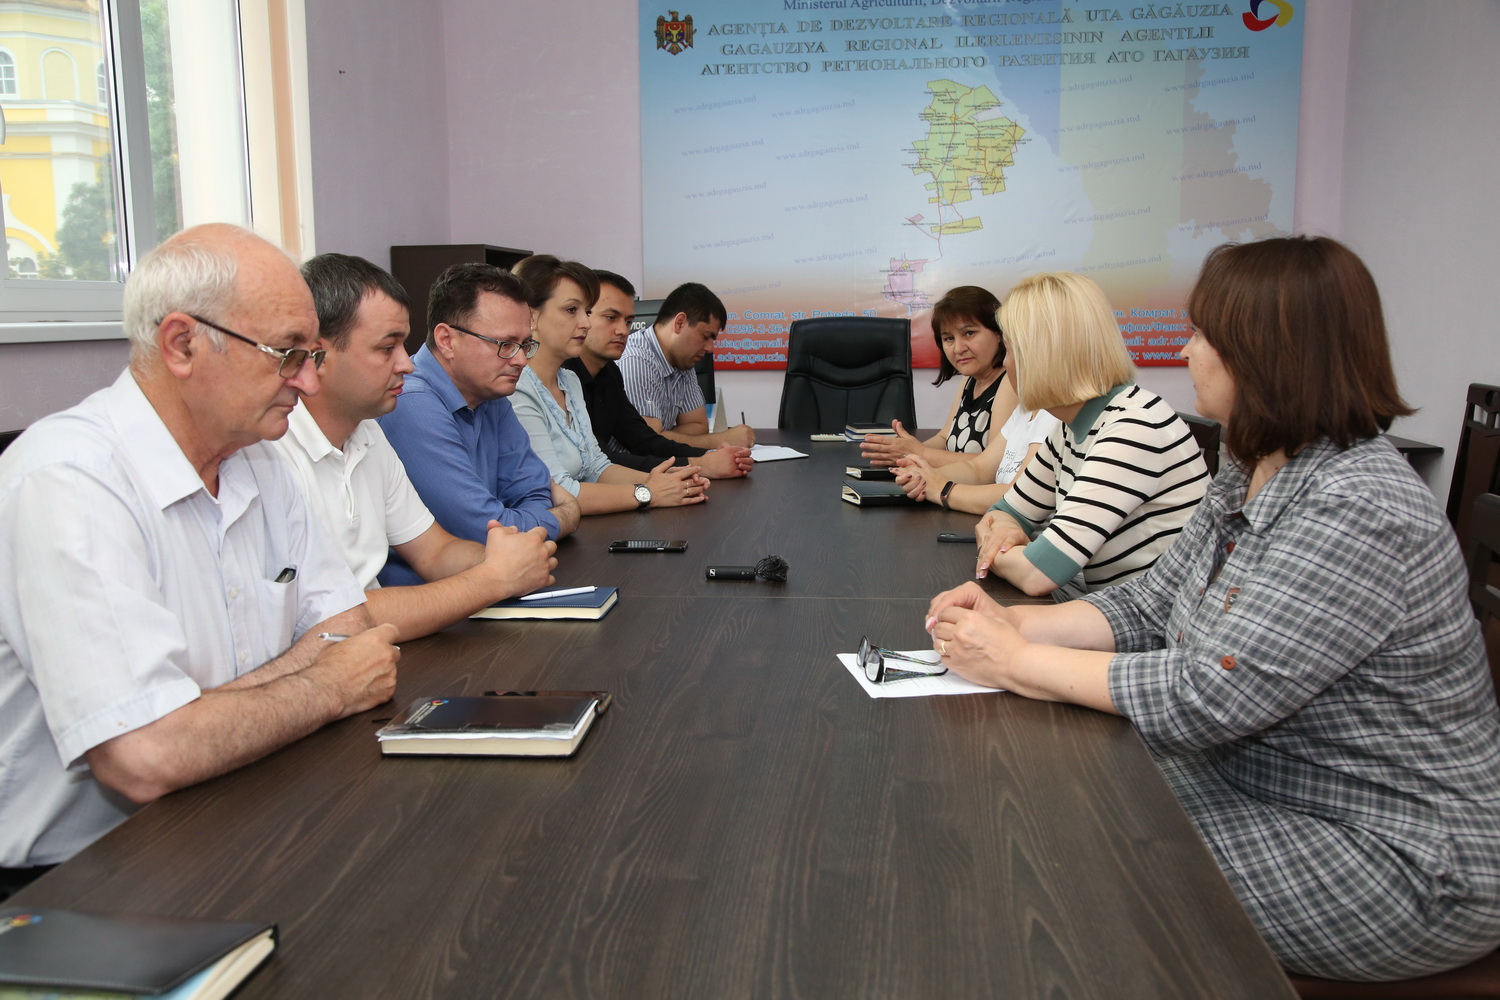 Башкан провела совещание с коллективом АРР: определены приоритеты на ближайший период